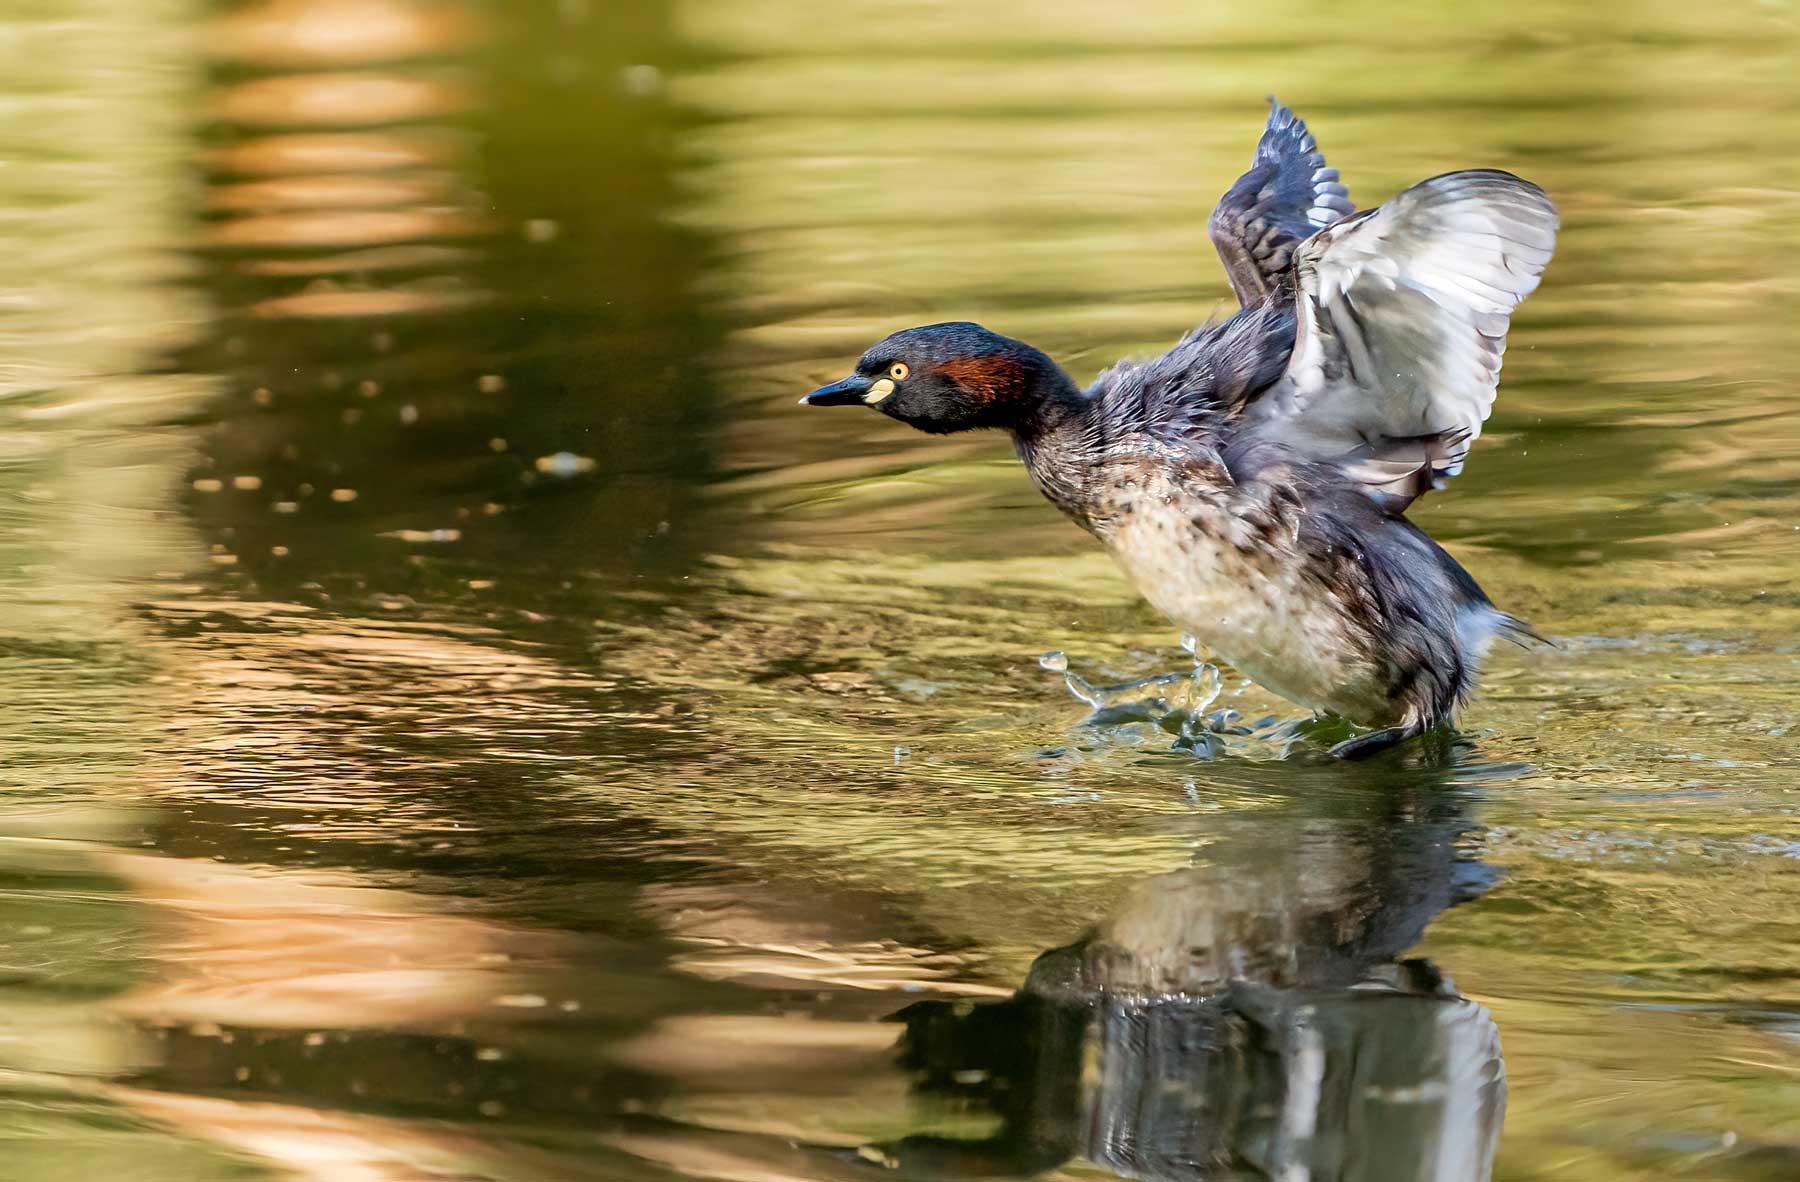 Guided Bird Photography Tour of Laratinga wetlands